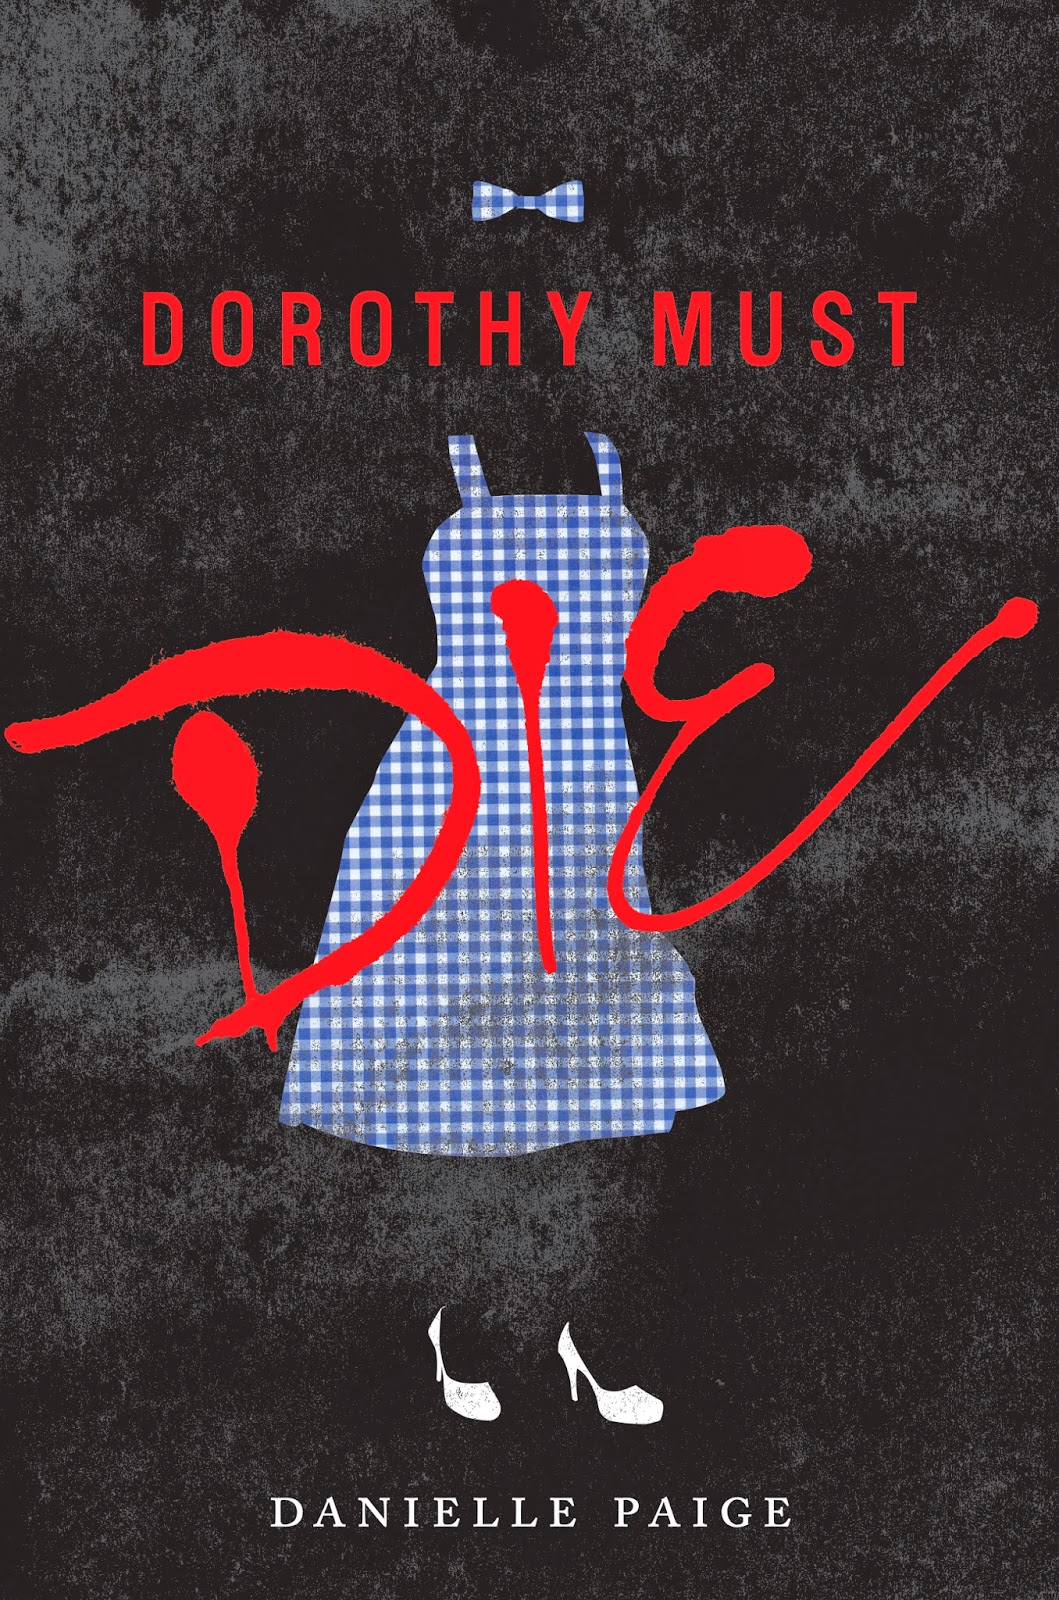 DorothyMustDie